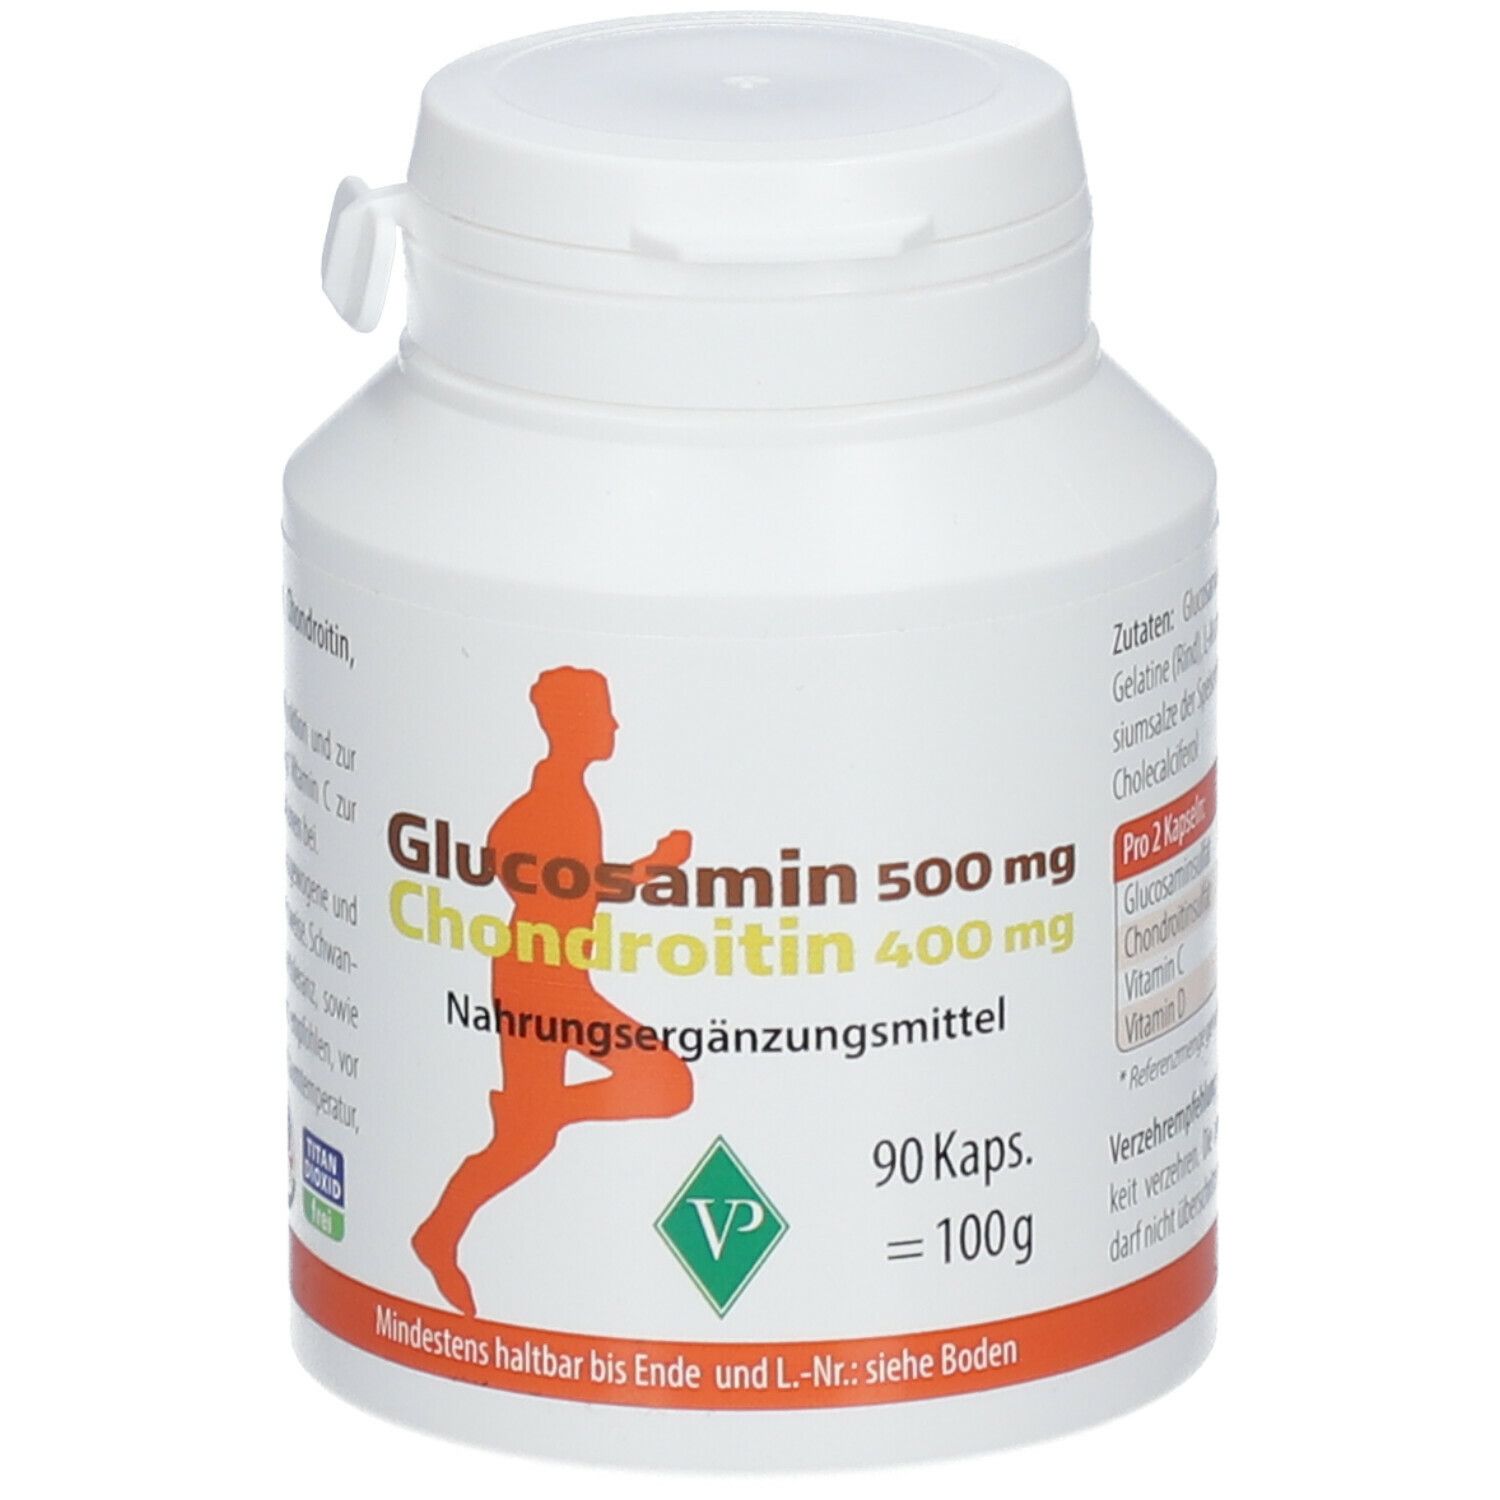 Image of Glucosamin 500 mg + Chondroitin 400 mg